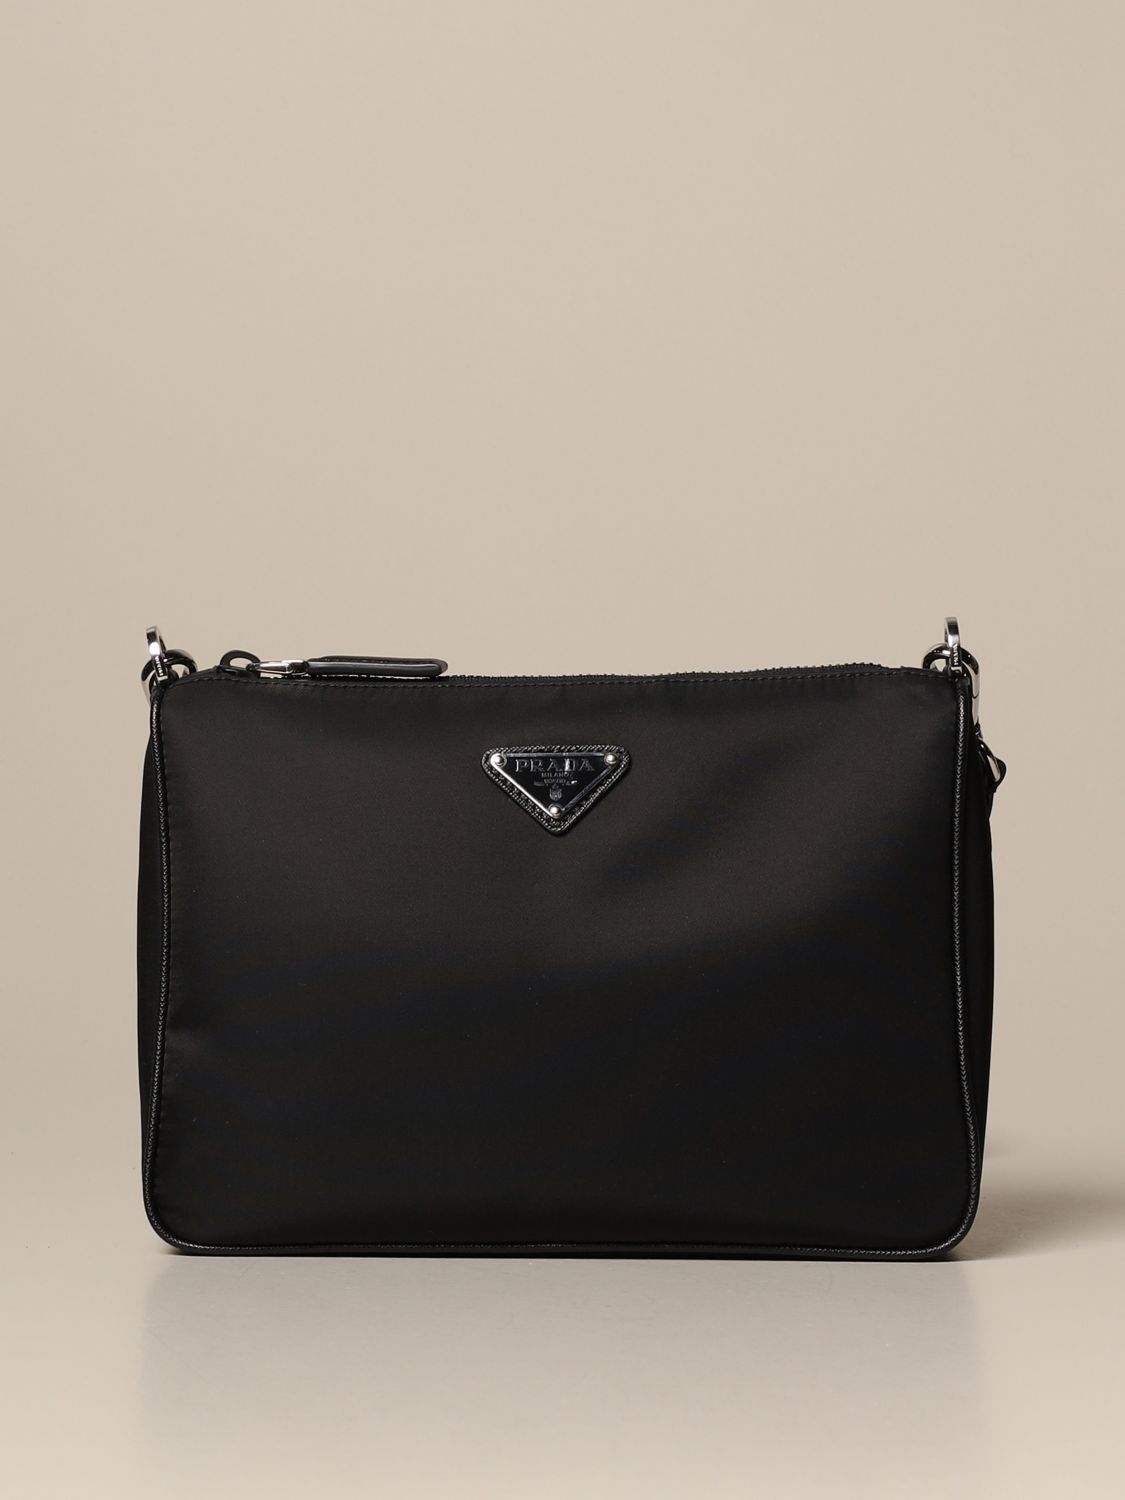 PRADA: nylon shoulder bag with triangular logo - Black | Prada shoulder ...